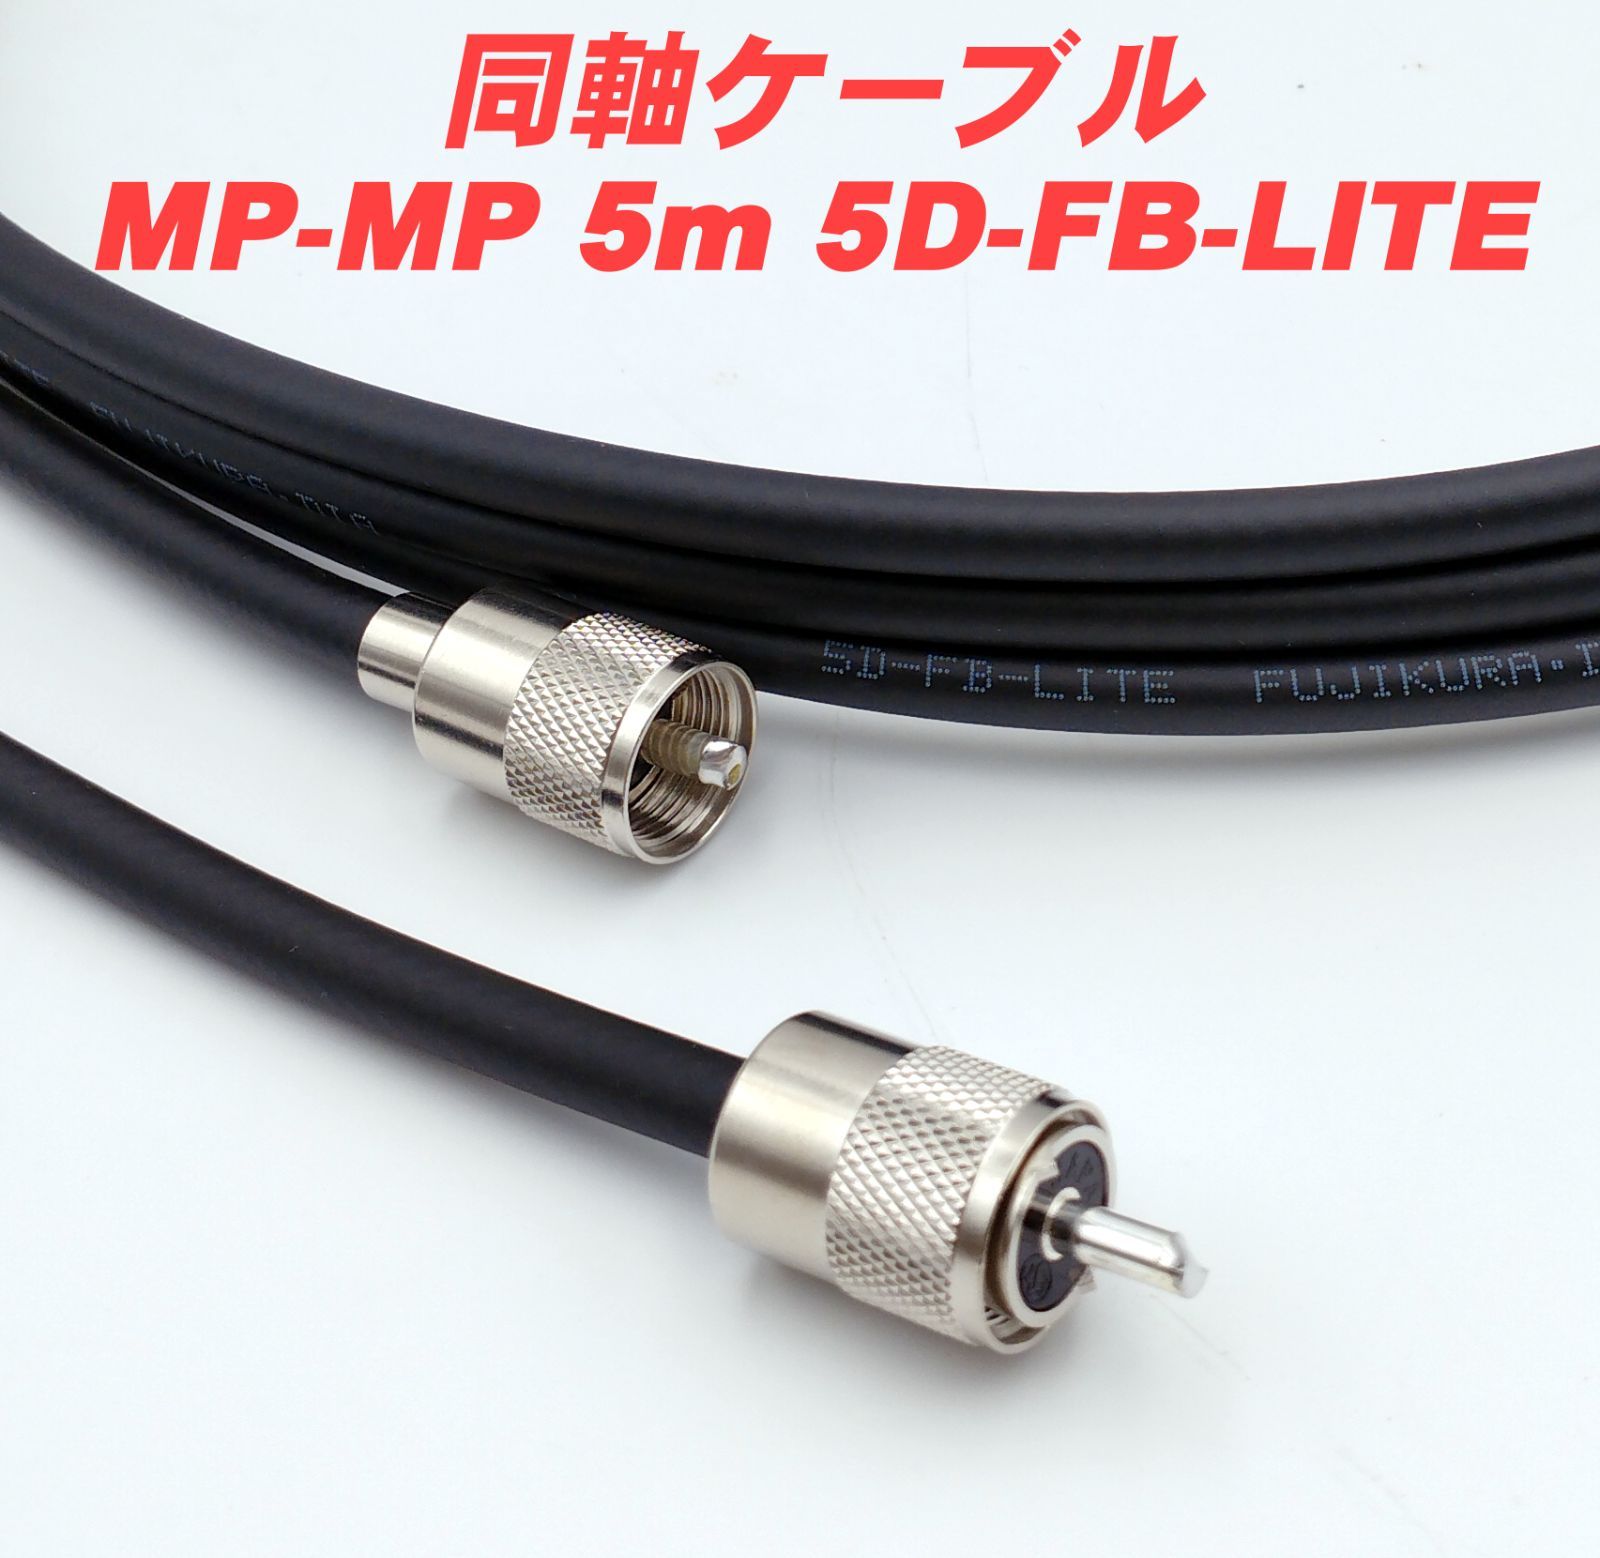 同軸ケーブル10DFB NP-NP 8m (インピーダンス:50Ω) 10D-FB加工製作品ツリービレッジ - 1